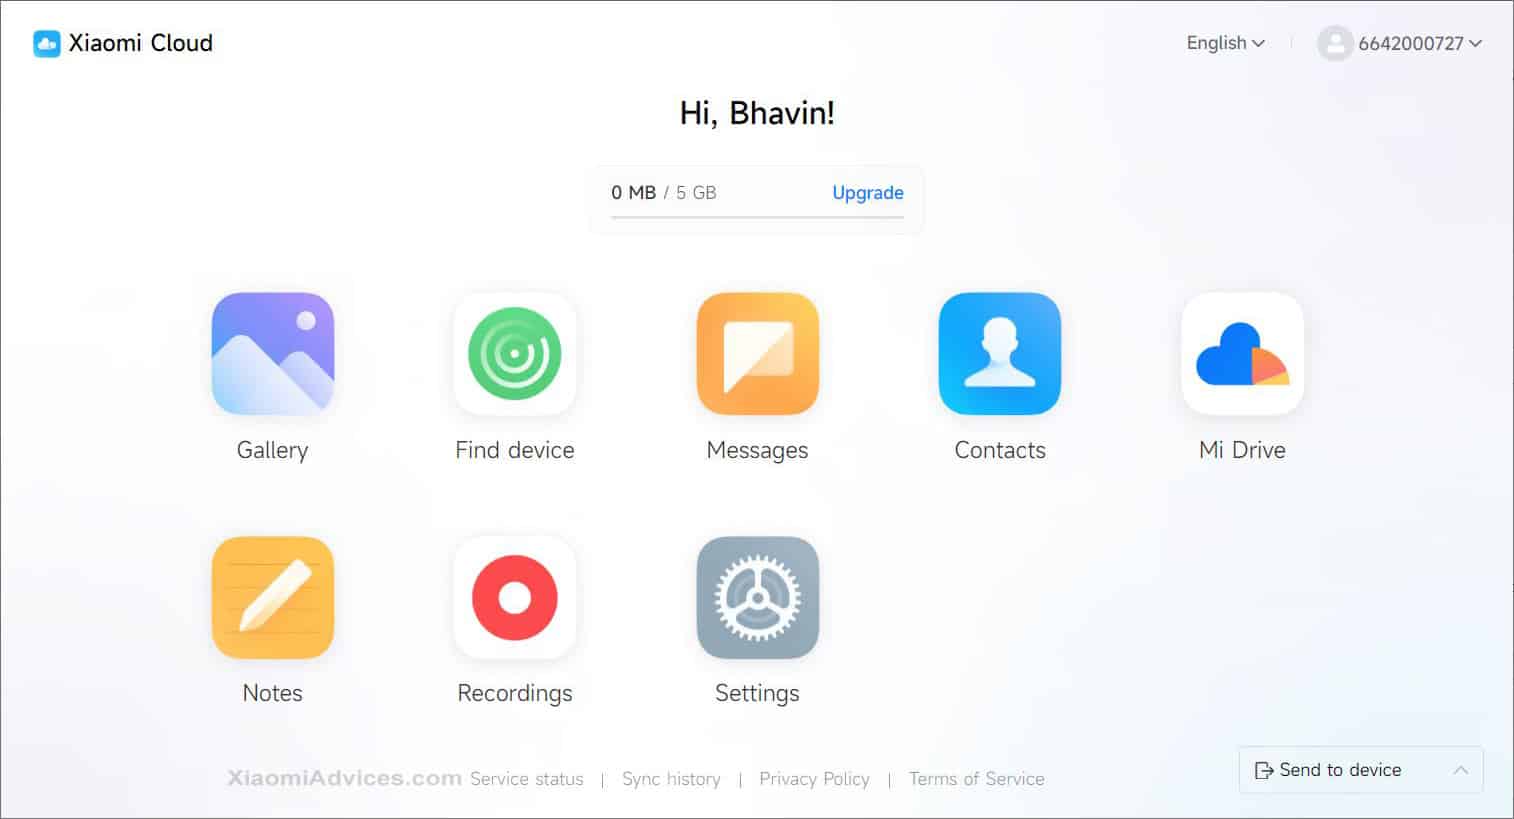 Xiaomi Cloud Account Dashboard